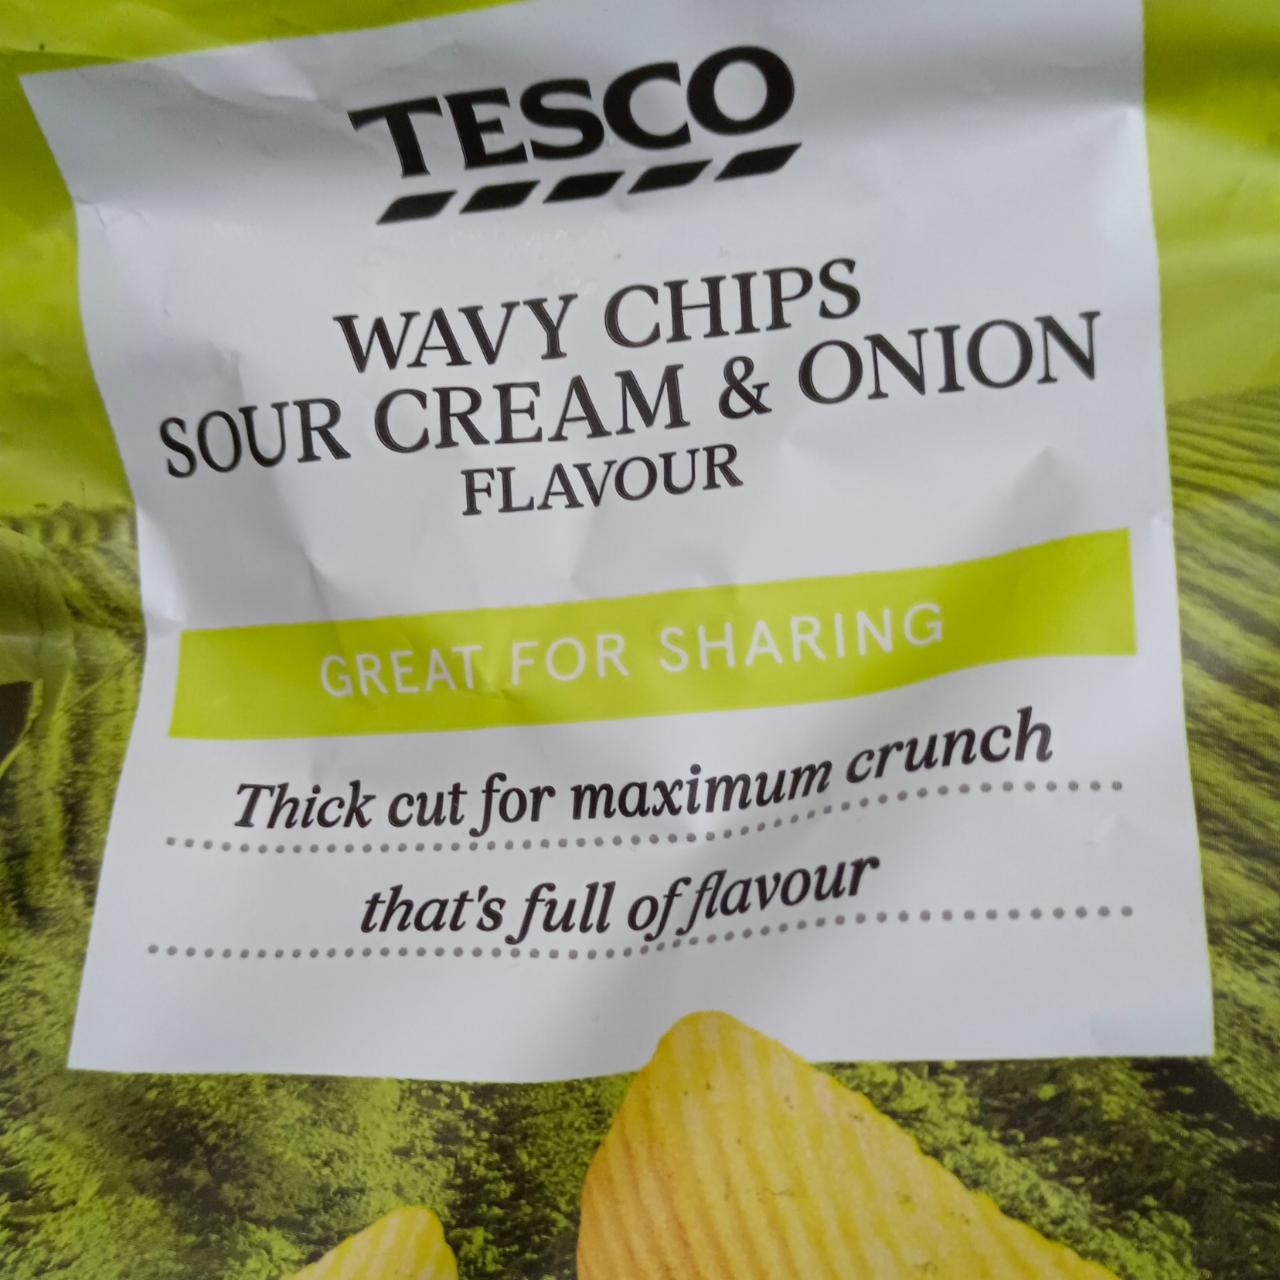 Képek - Wavy Chips Sour Cream & Onion Flavour Tesco